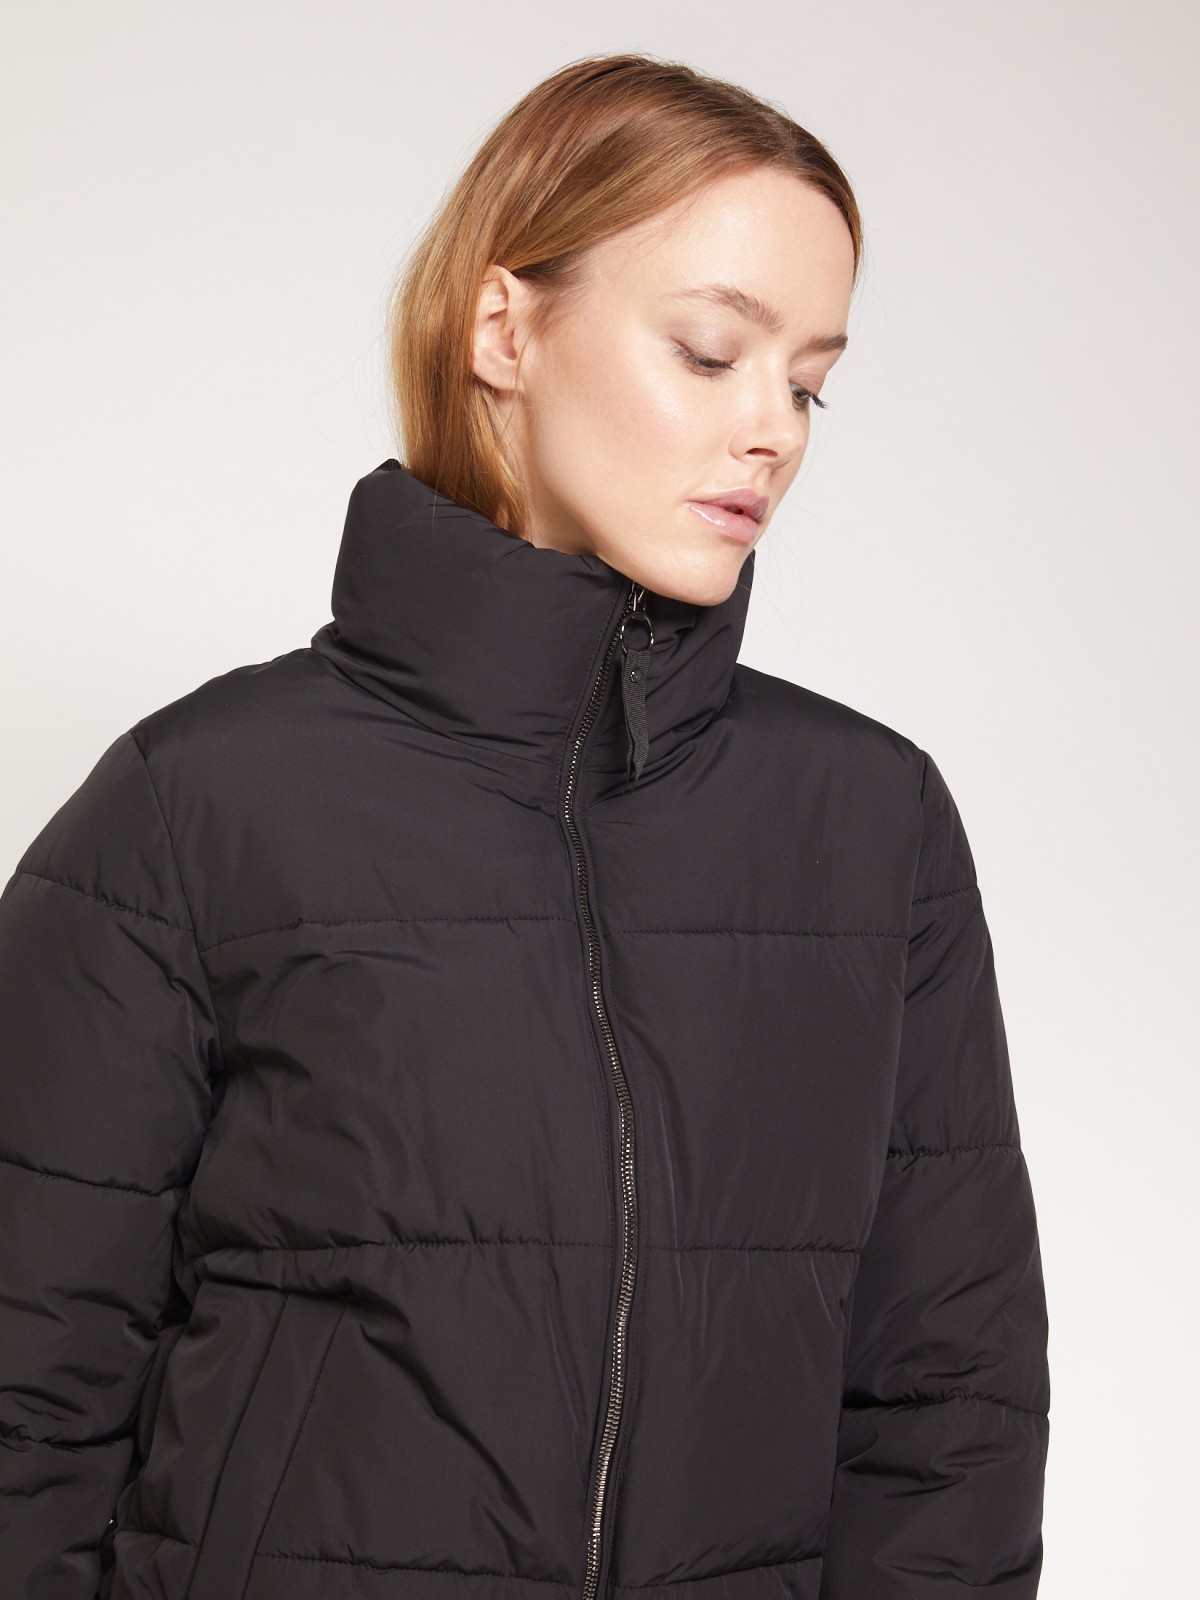 Тёплая куртка с высоким воротником-стойкой zolla 021335112034, цвет черный, размер XS - фото 5